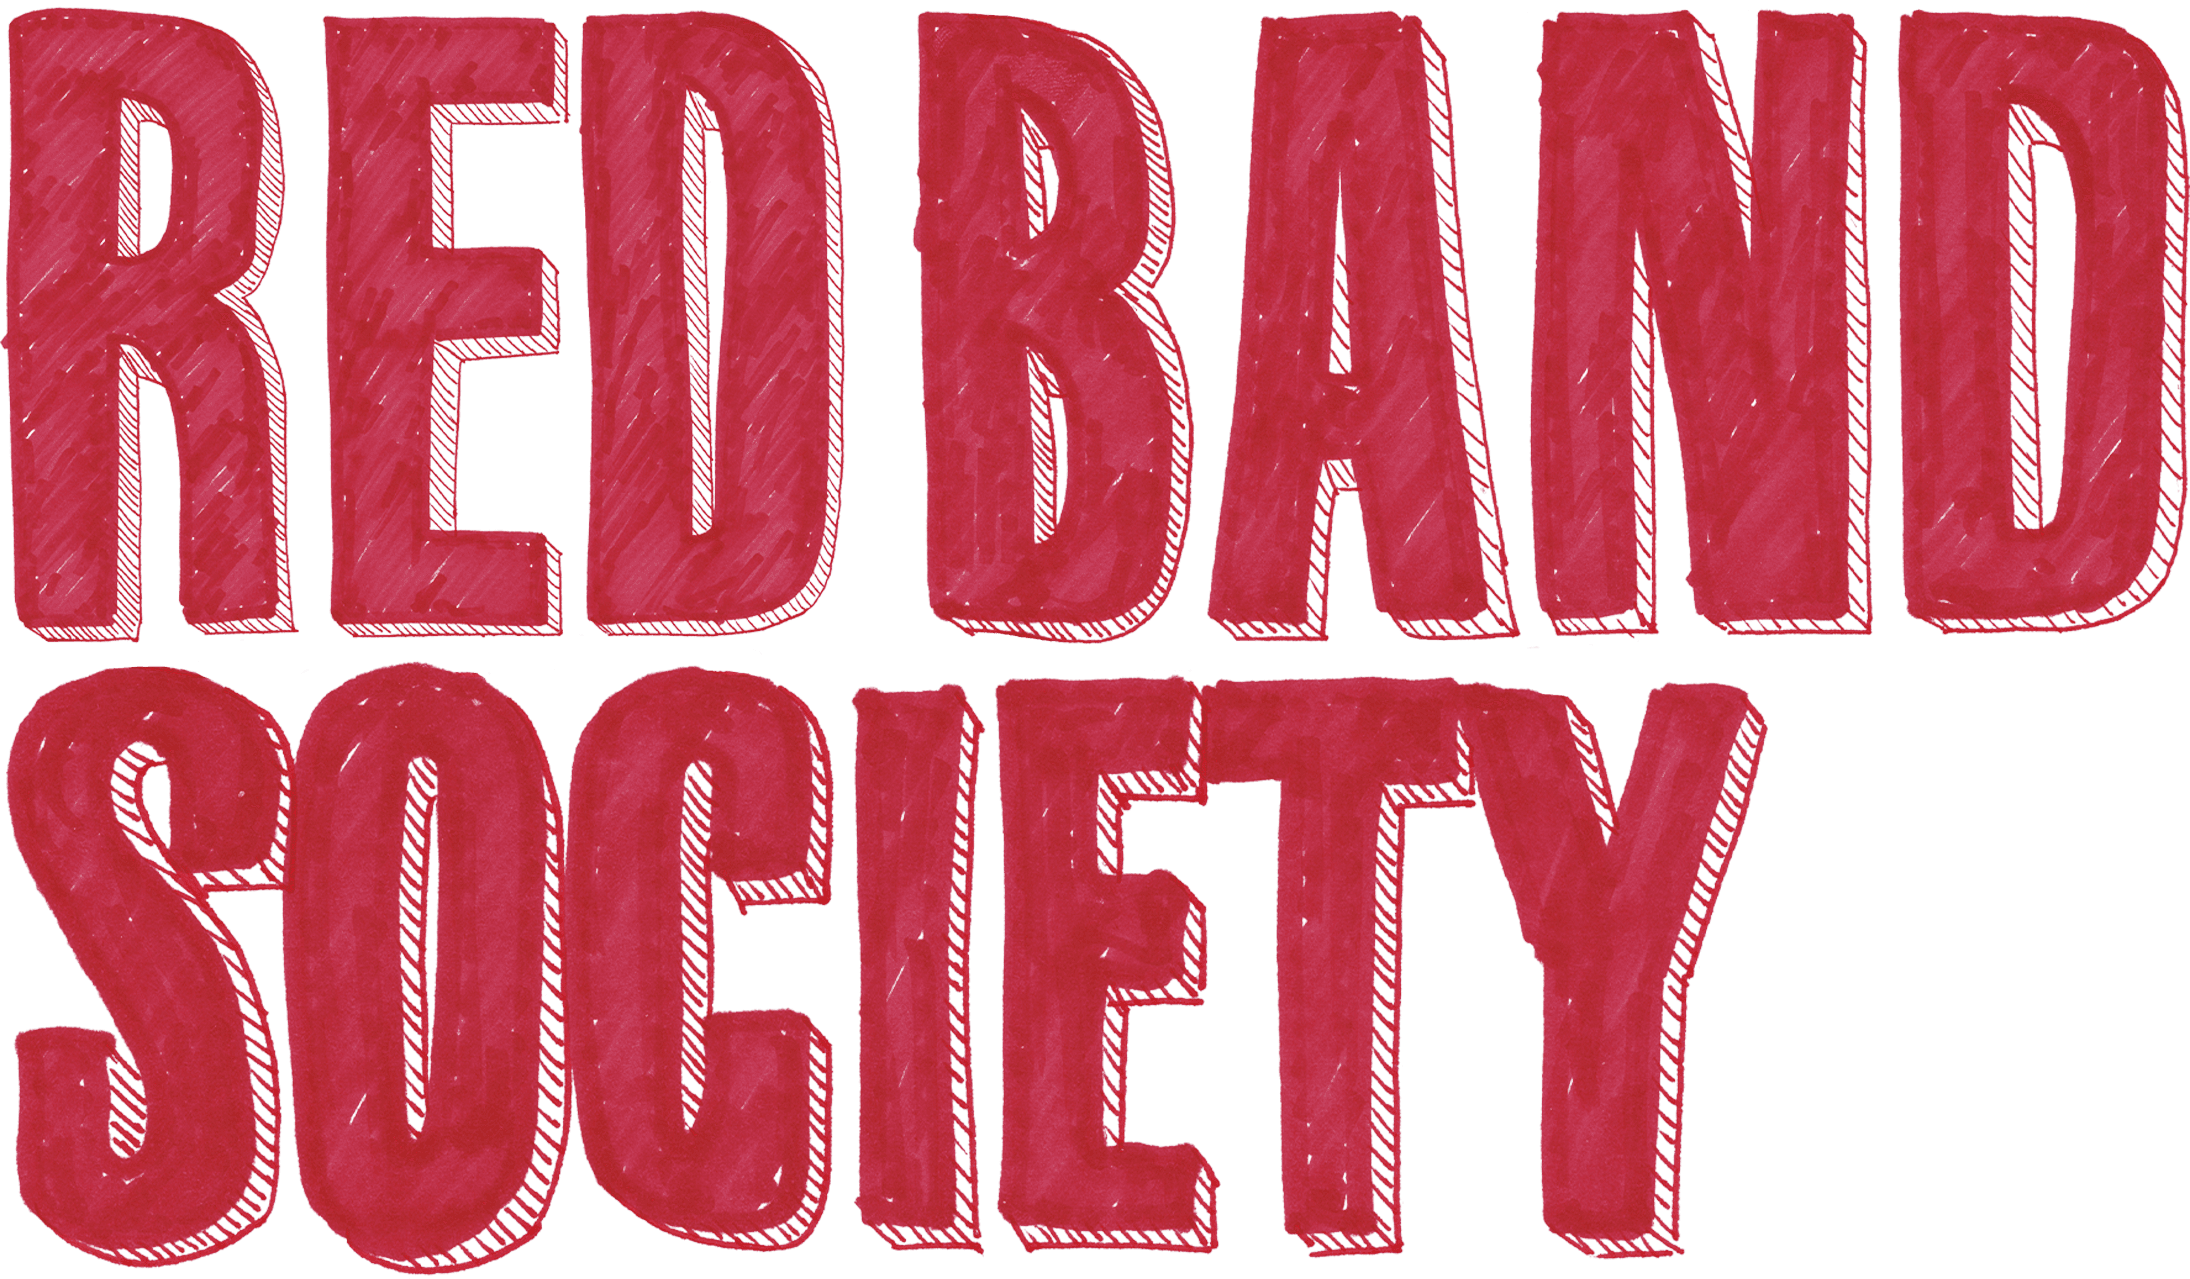 Red Band Society logo